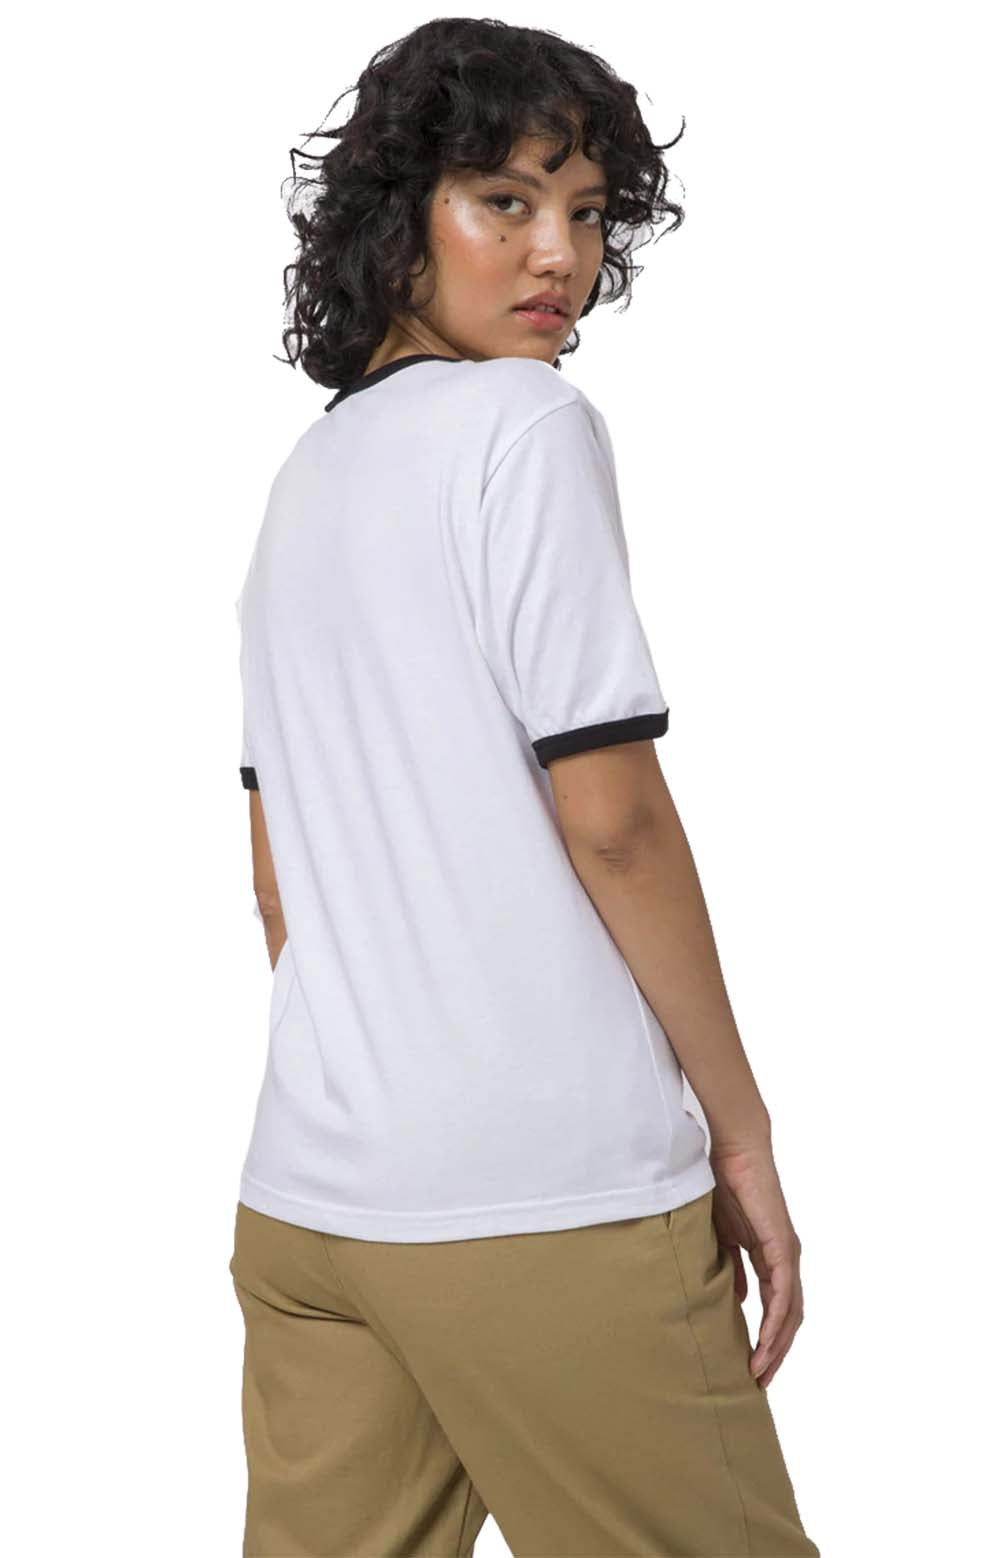 Fun Runger T-Shirt - White